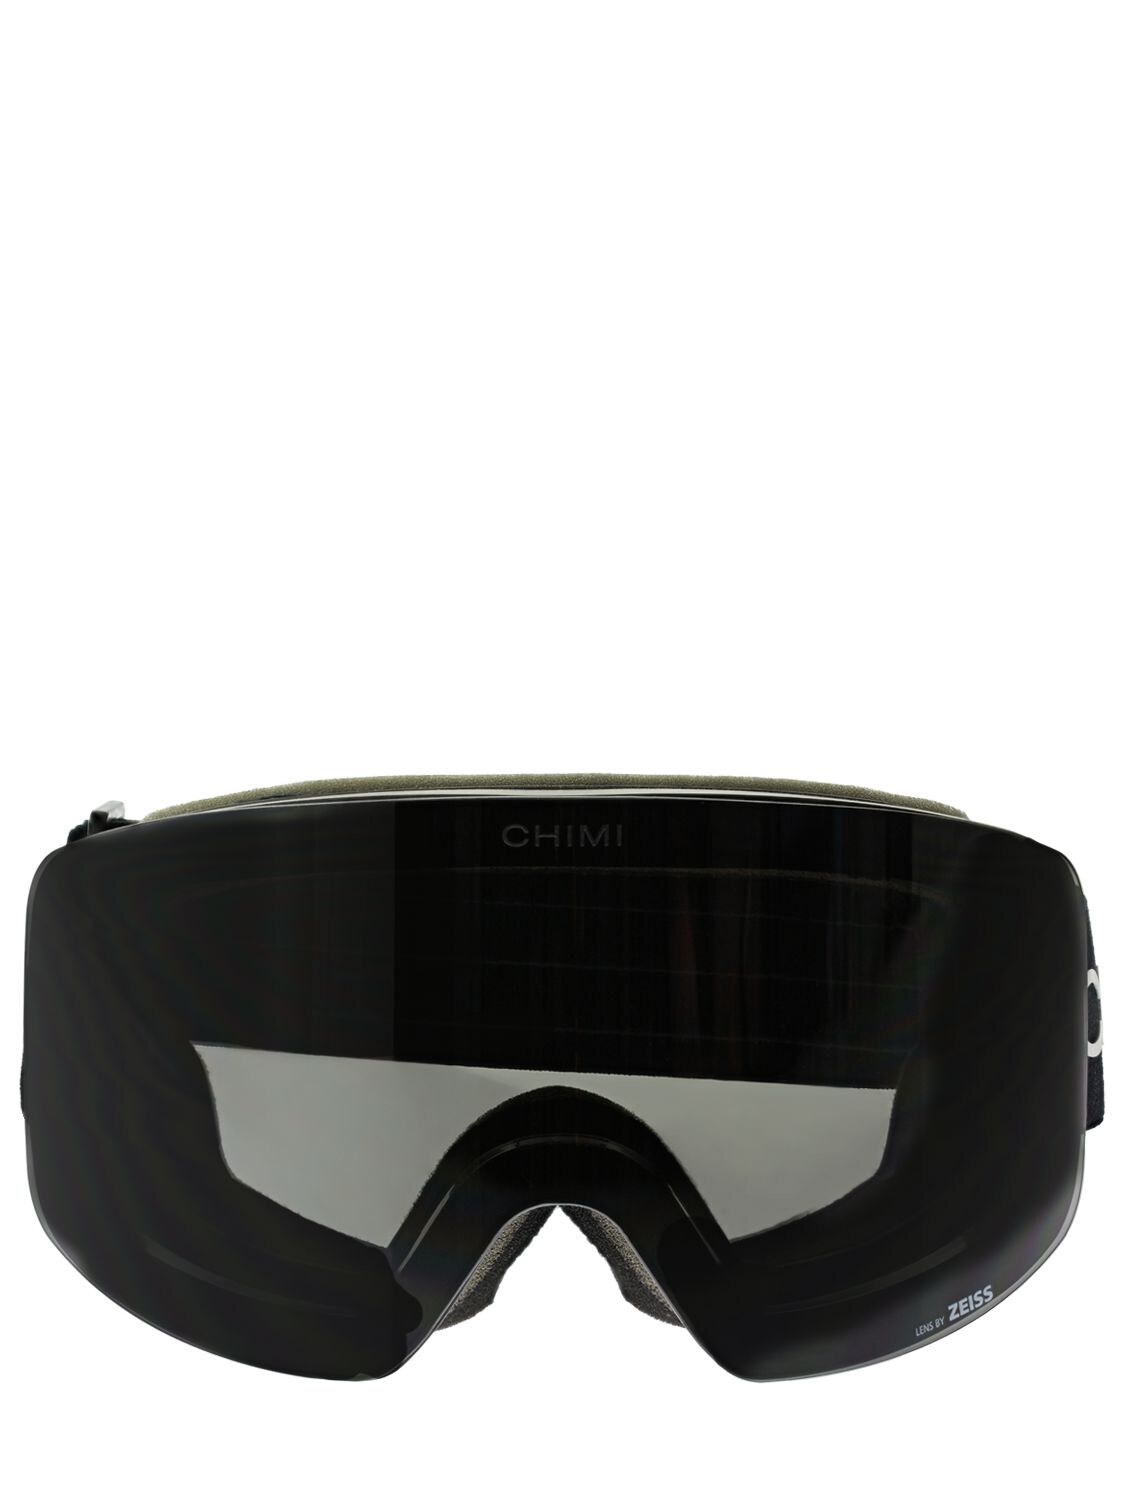 Chimi 01 Black Ski Goggles In 블랙